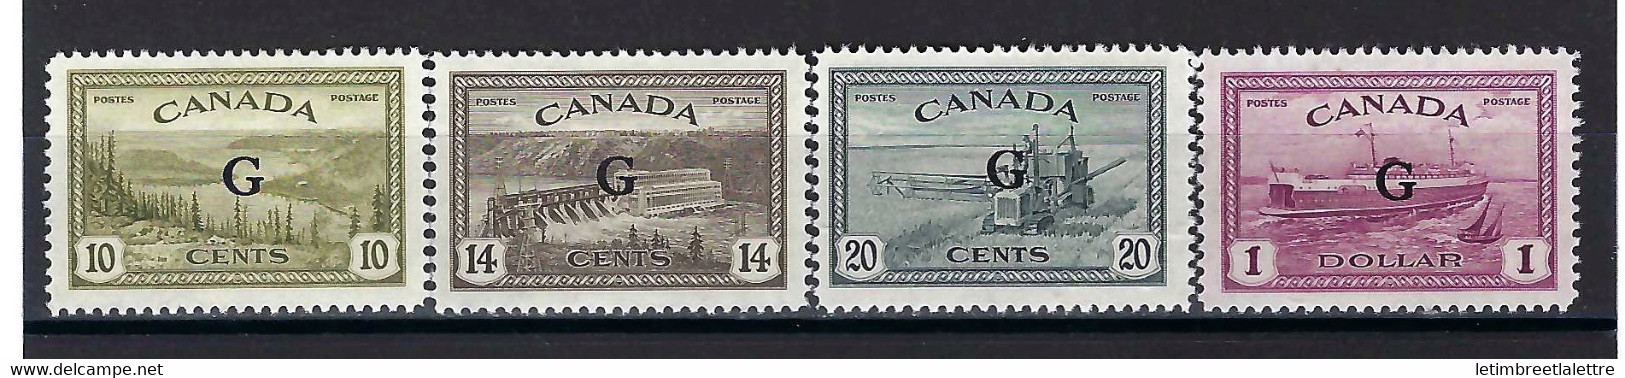 ⭐ Canada - Service - YT N° 16 à 19 * - Neuf Avec Charnière - 1950 / 1952 ⭐ - Surchargés